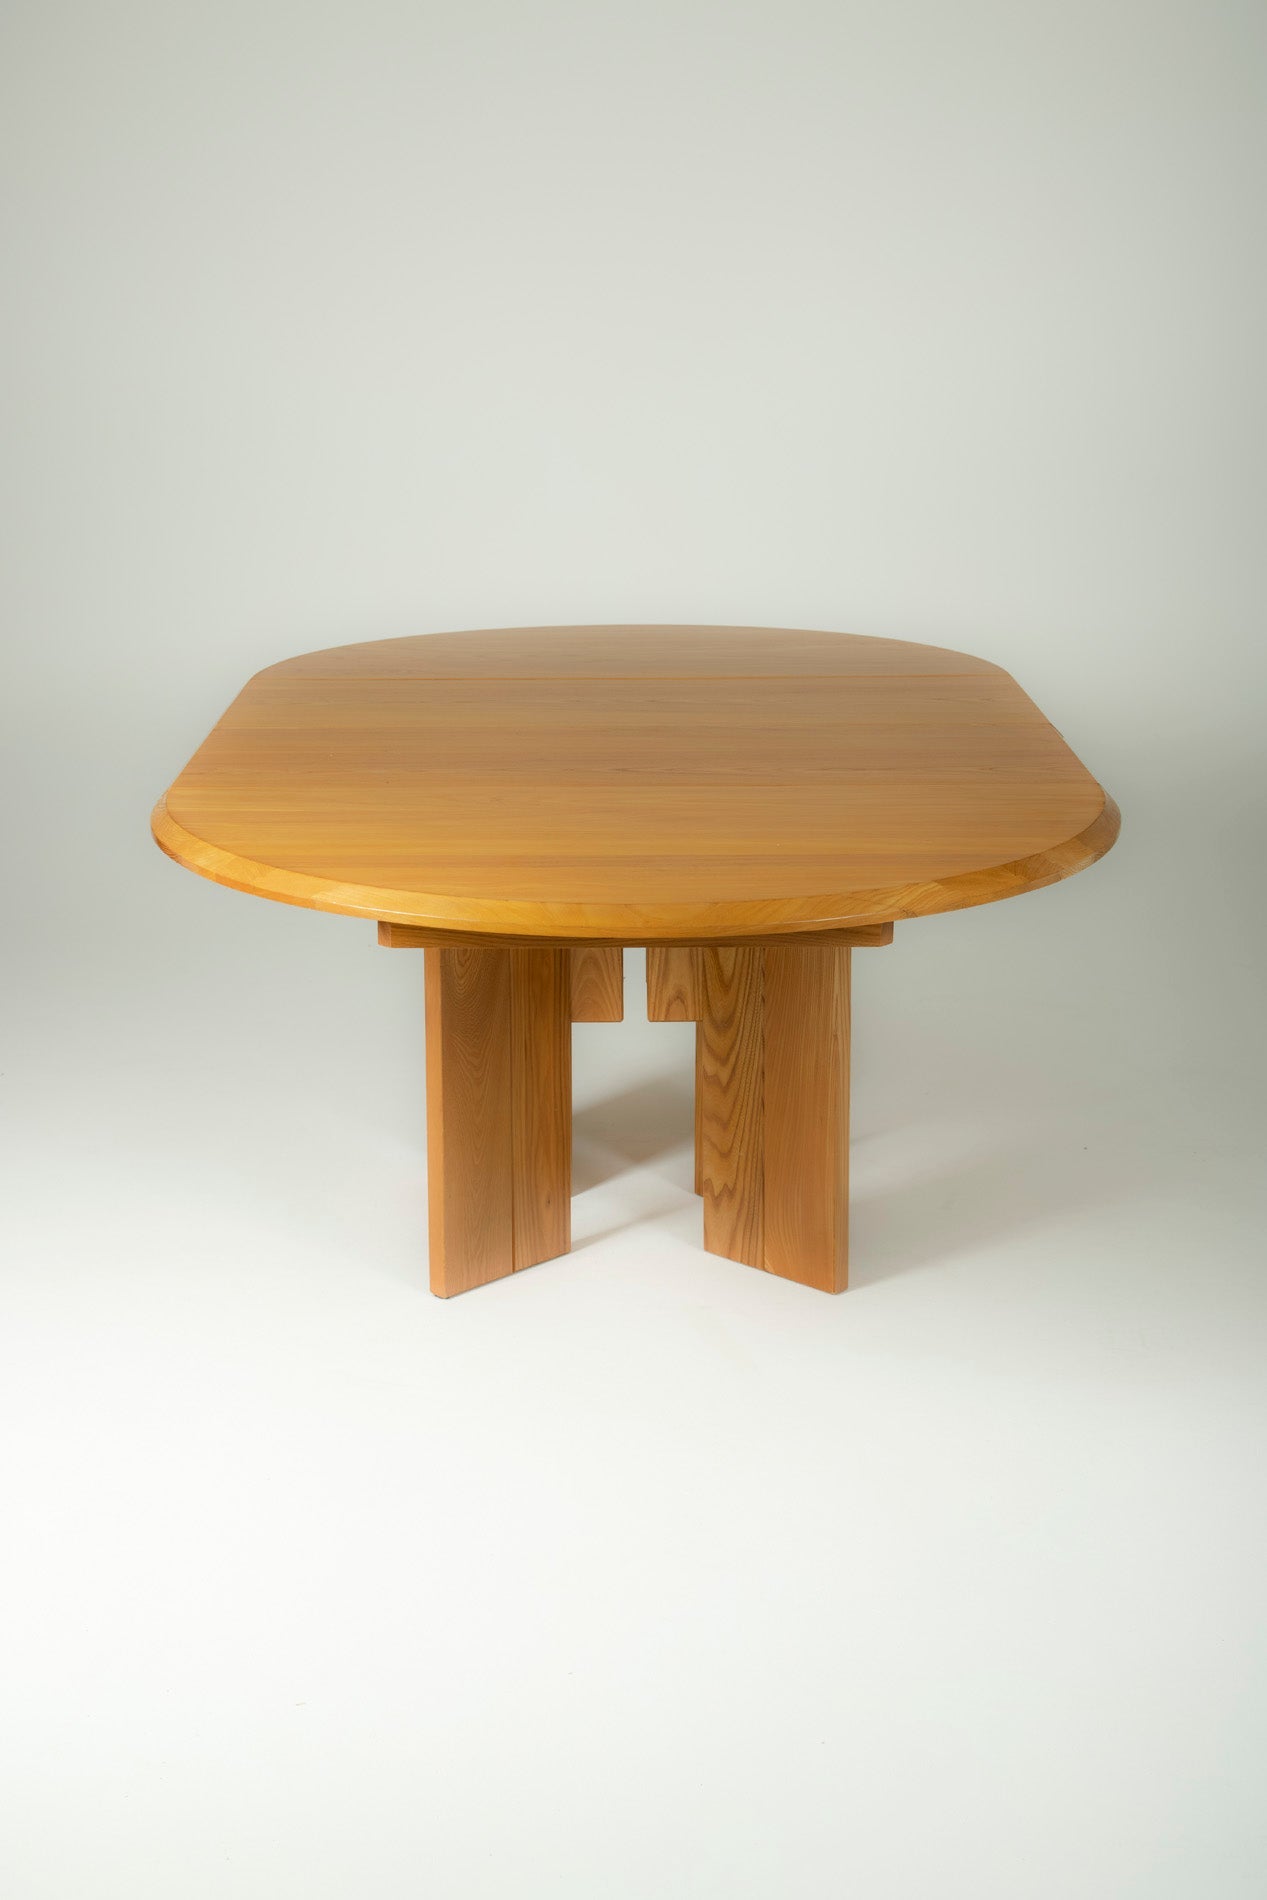 Table à manger ronde en orme massif conçue par la Maison Regain dans les années 1980. Table dotée d'une rallonge pour manger aussi bien à 4 qu'à 6 personnes. Excellent état.